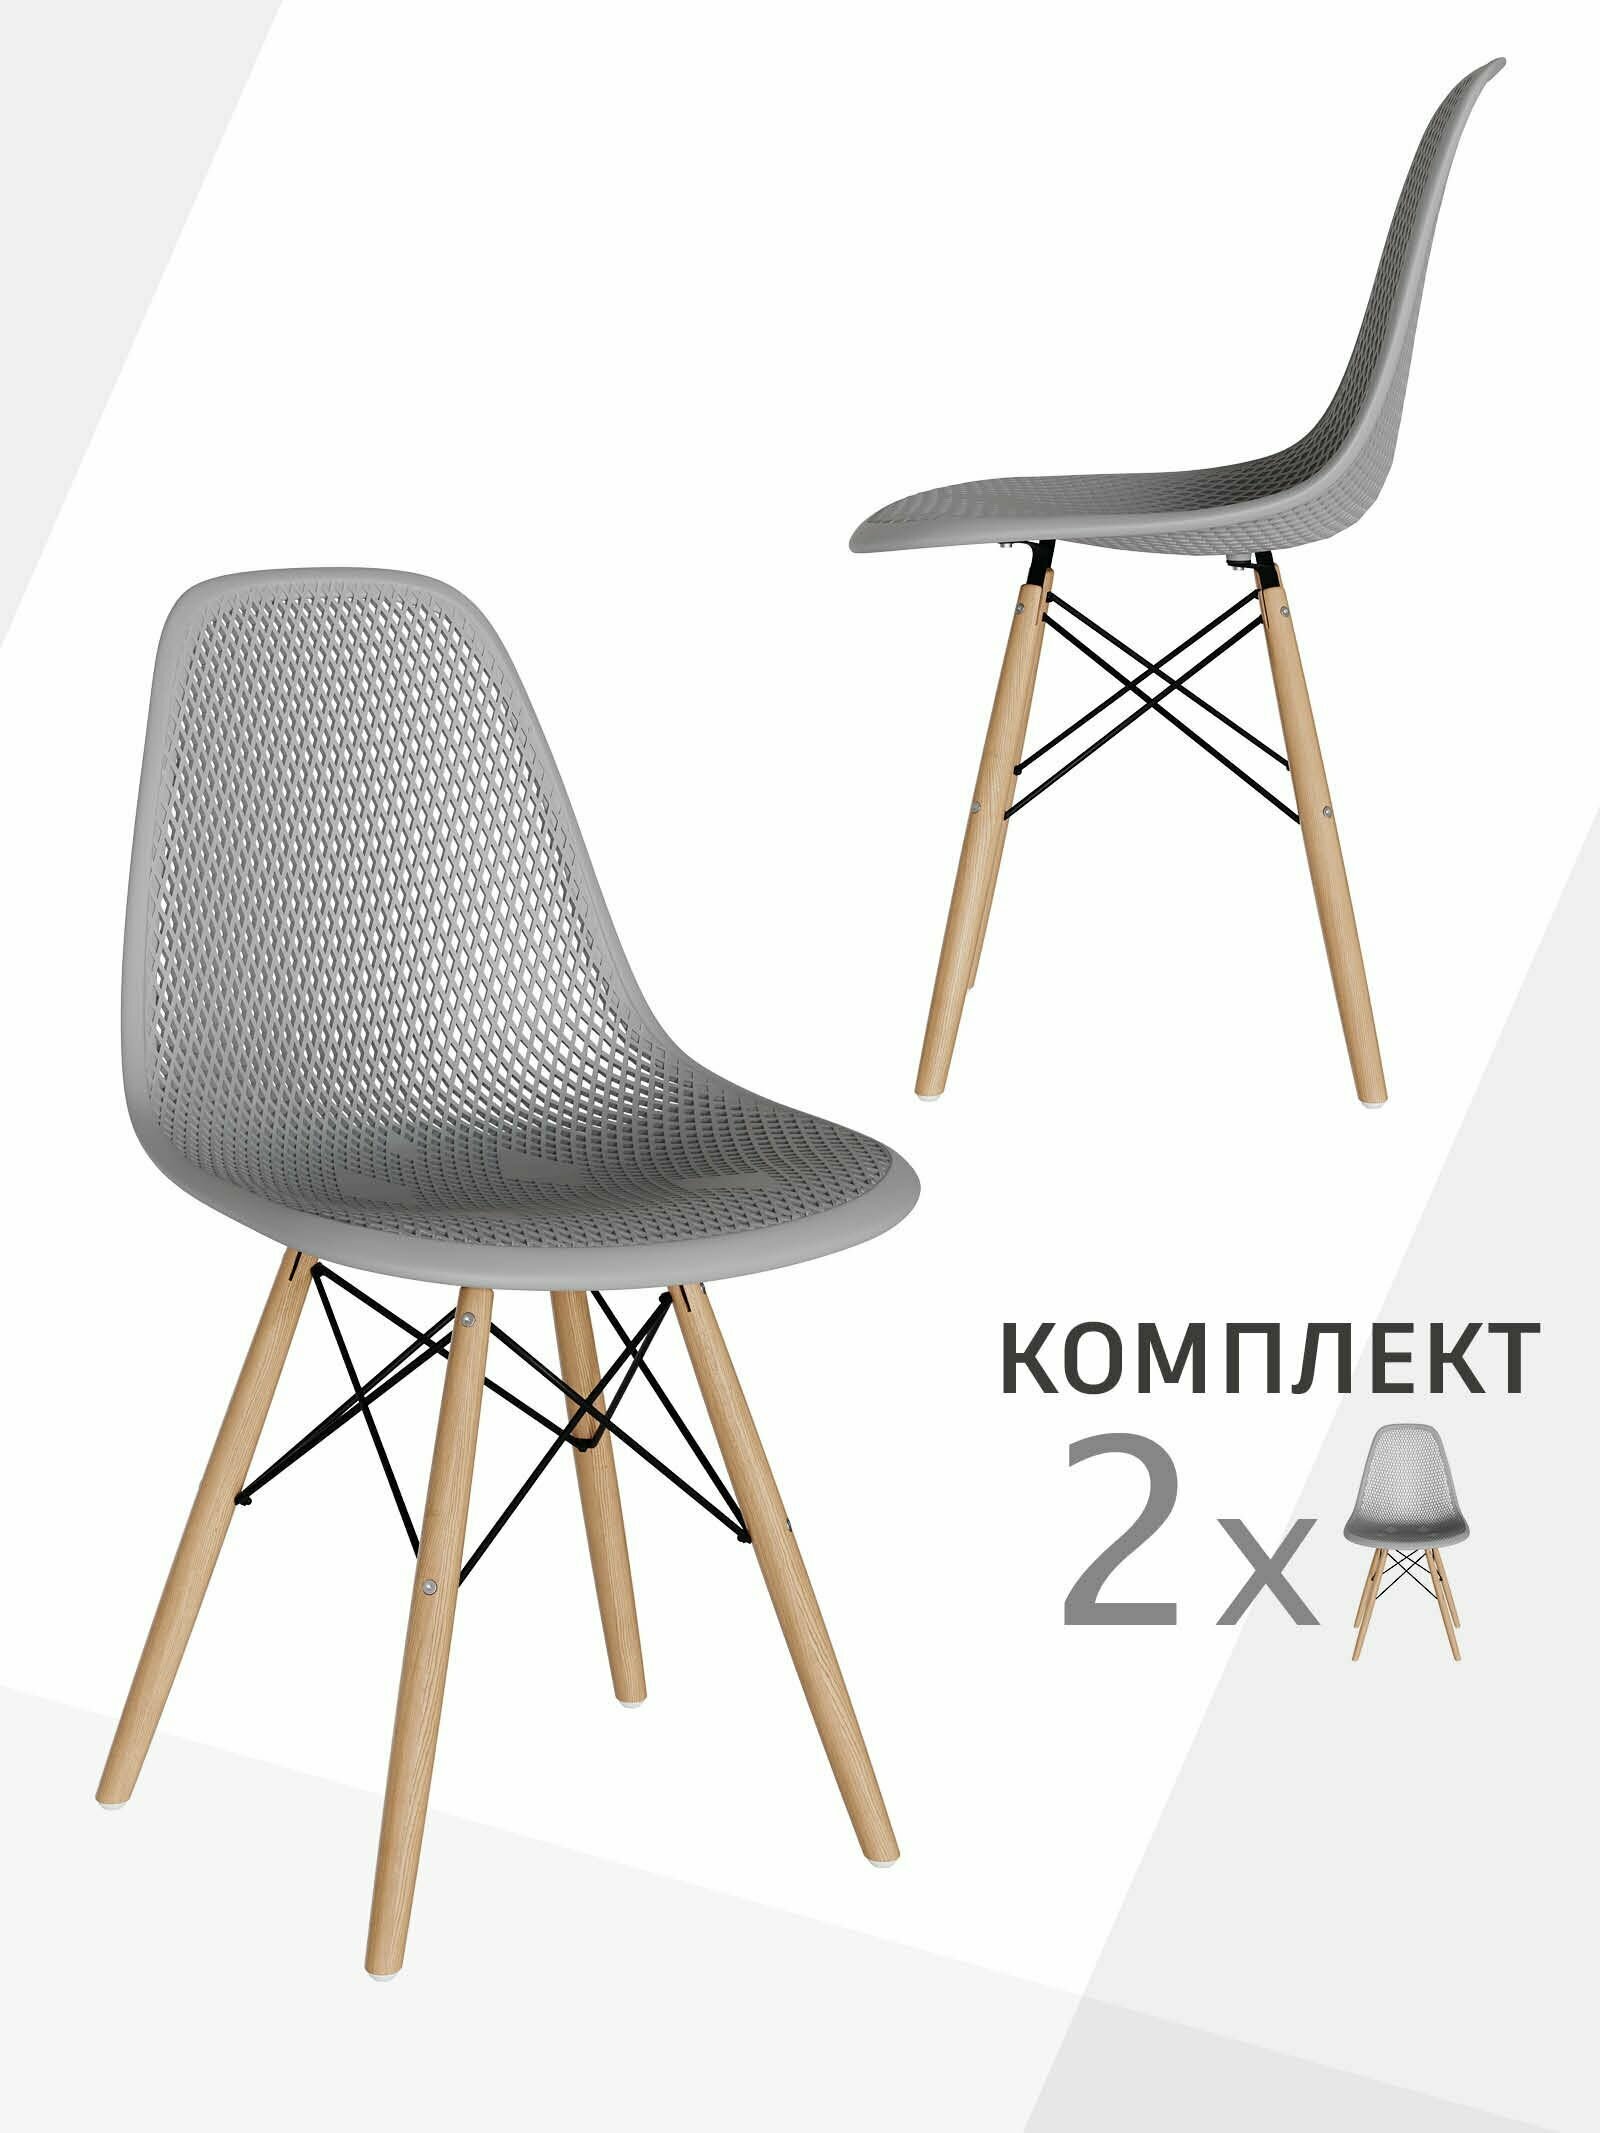 Комплект стульев 2 шт для кухни, гостиной, столовой со спинкой EAMES DSW, мебель для дачи и офиса